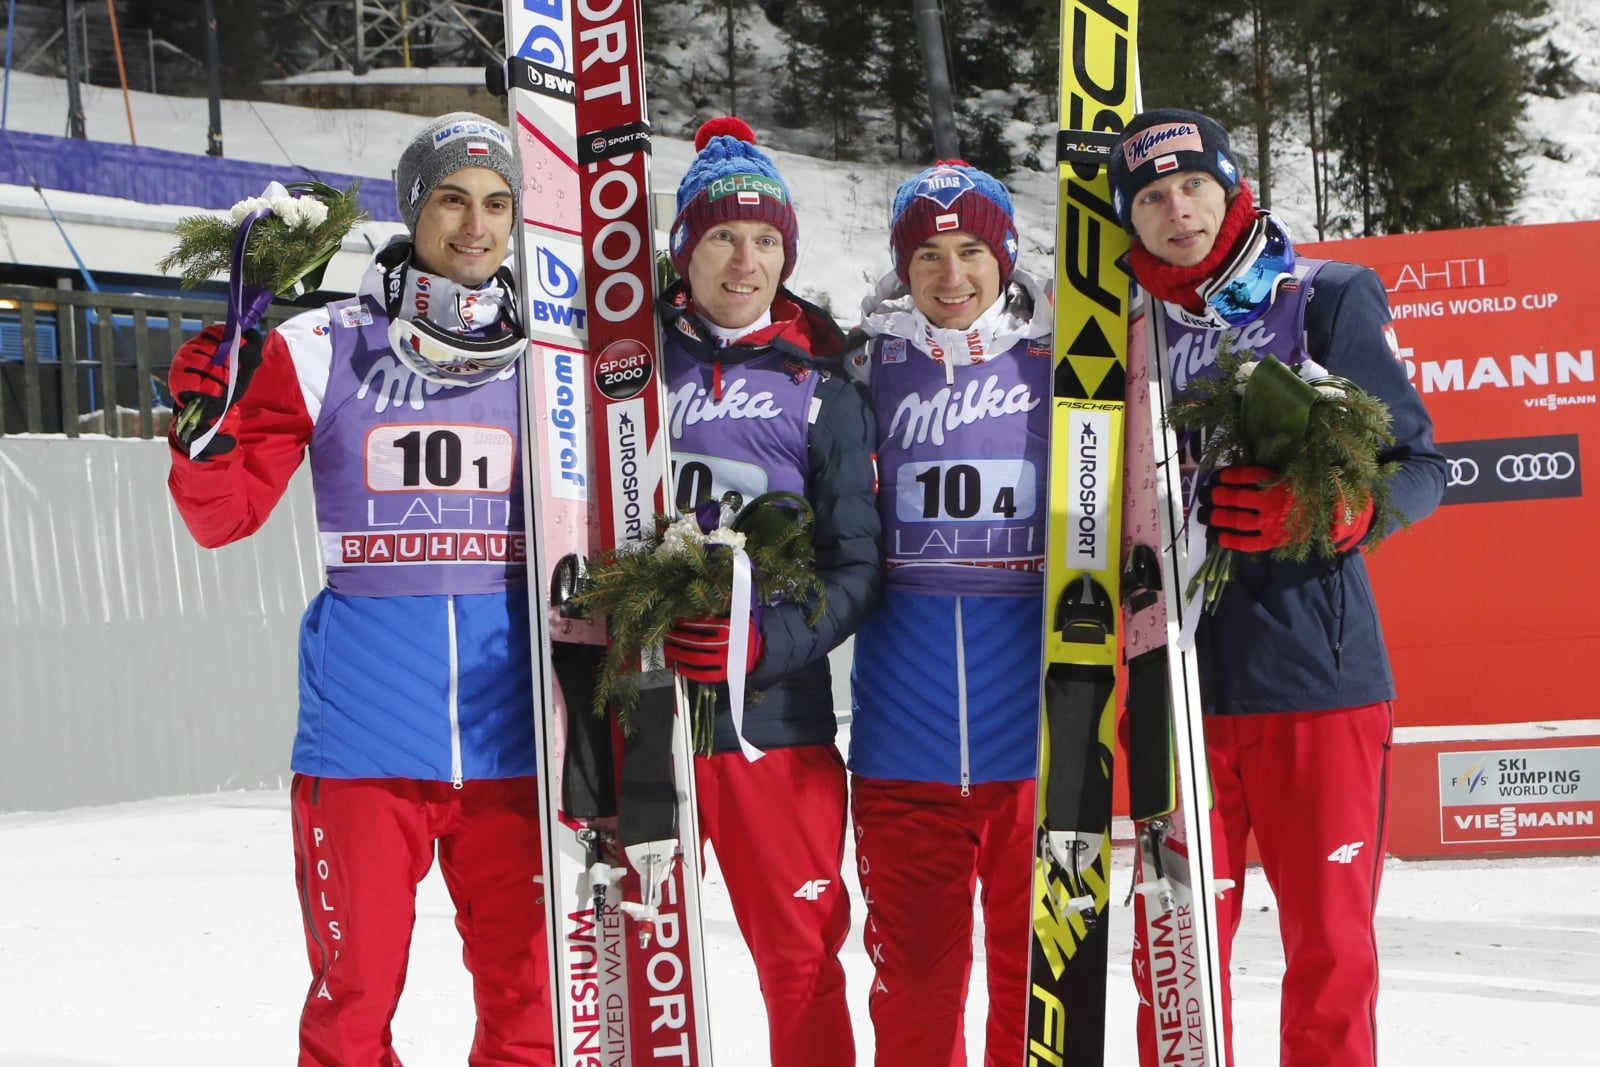 Polscy skoczkowie zajęli drugie miejsce w konkursie drużynowym w fińskim Lahti. Zawody wygrali Niemcy, a na najniższym stopniu podium stanęli mistrzowie olimpijscy – Norwegowie, fot. EPA/PEKKA SIPOLA 
